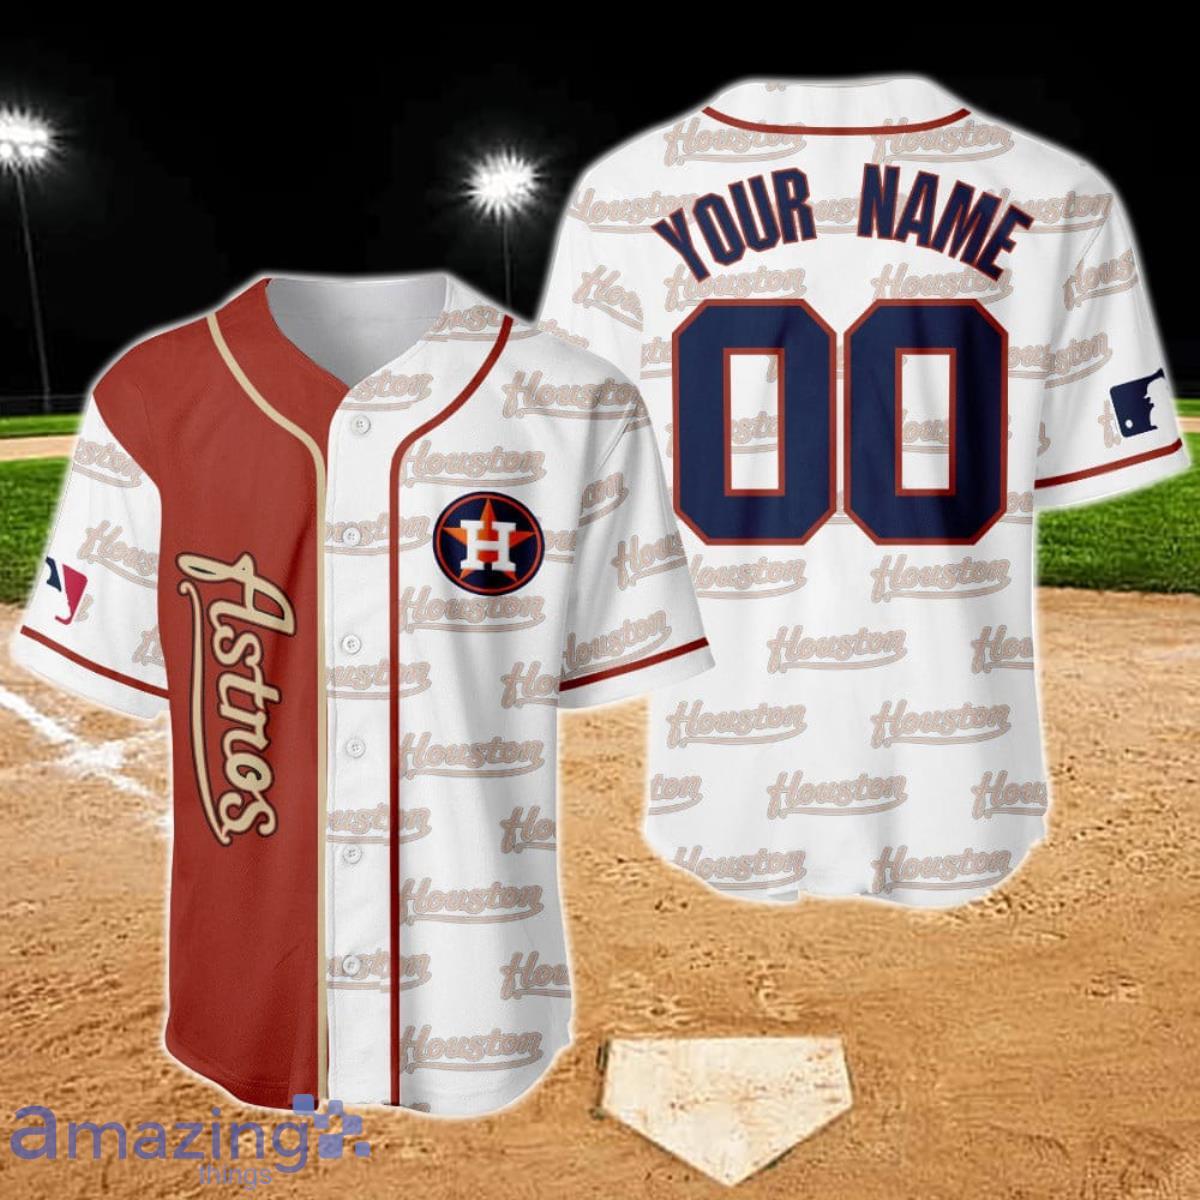 Houston Astros Major League Baseball Custom Name Baseball Jersey Shirt For  Sport